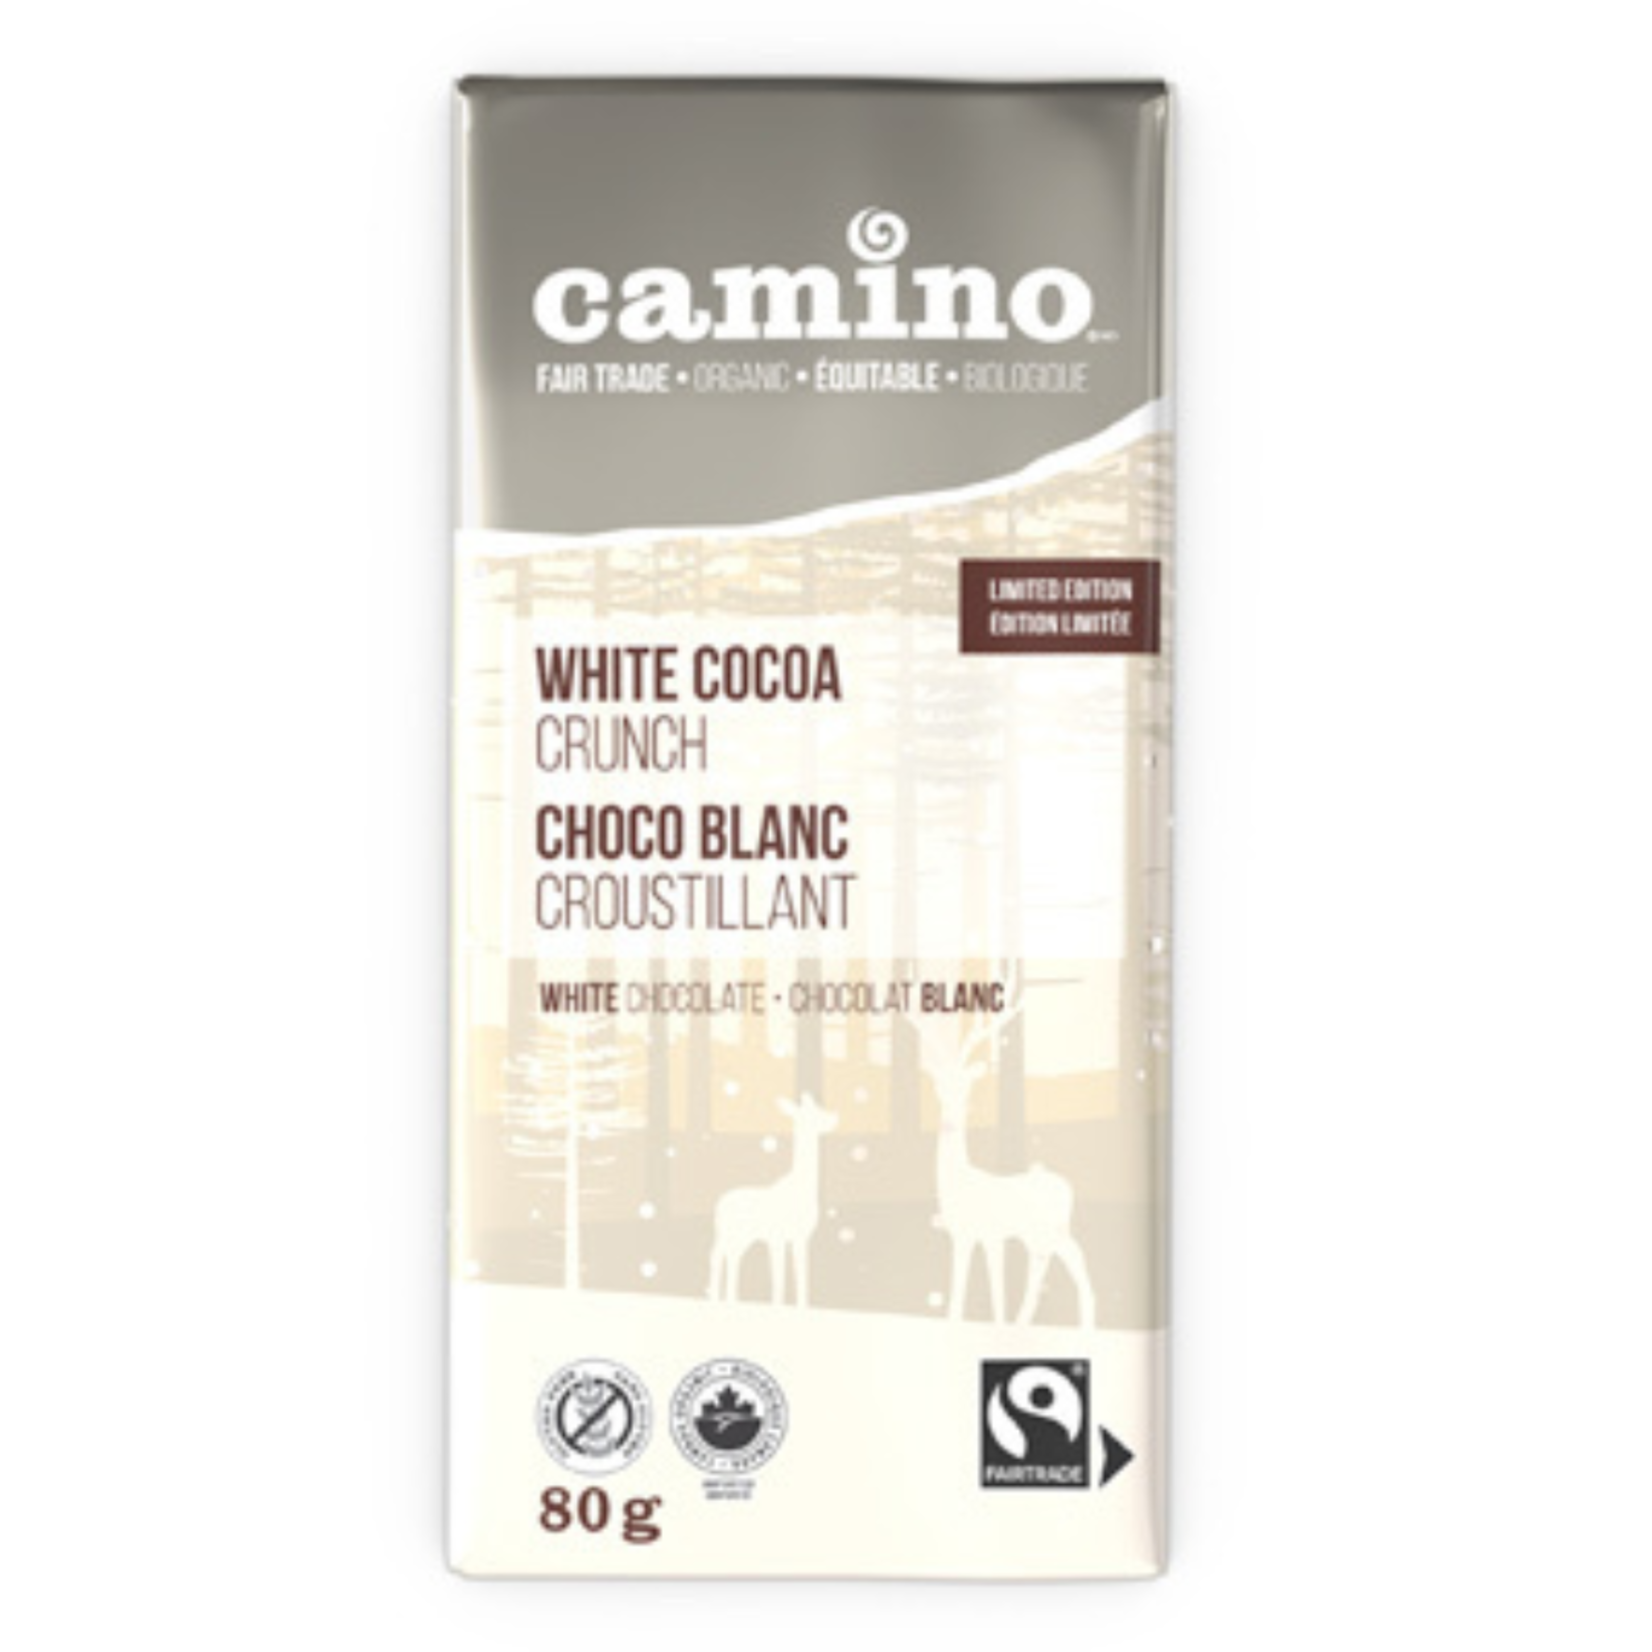 Camino Camino Chocolate White Cocoa Crunch